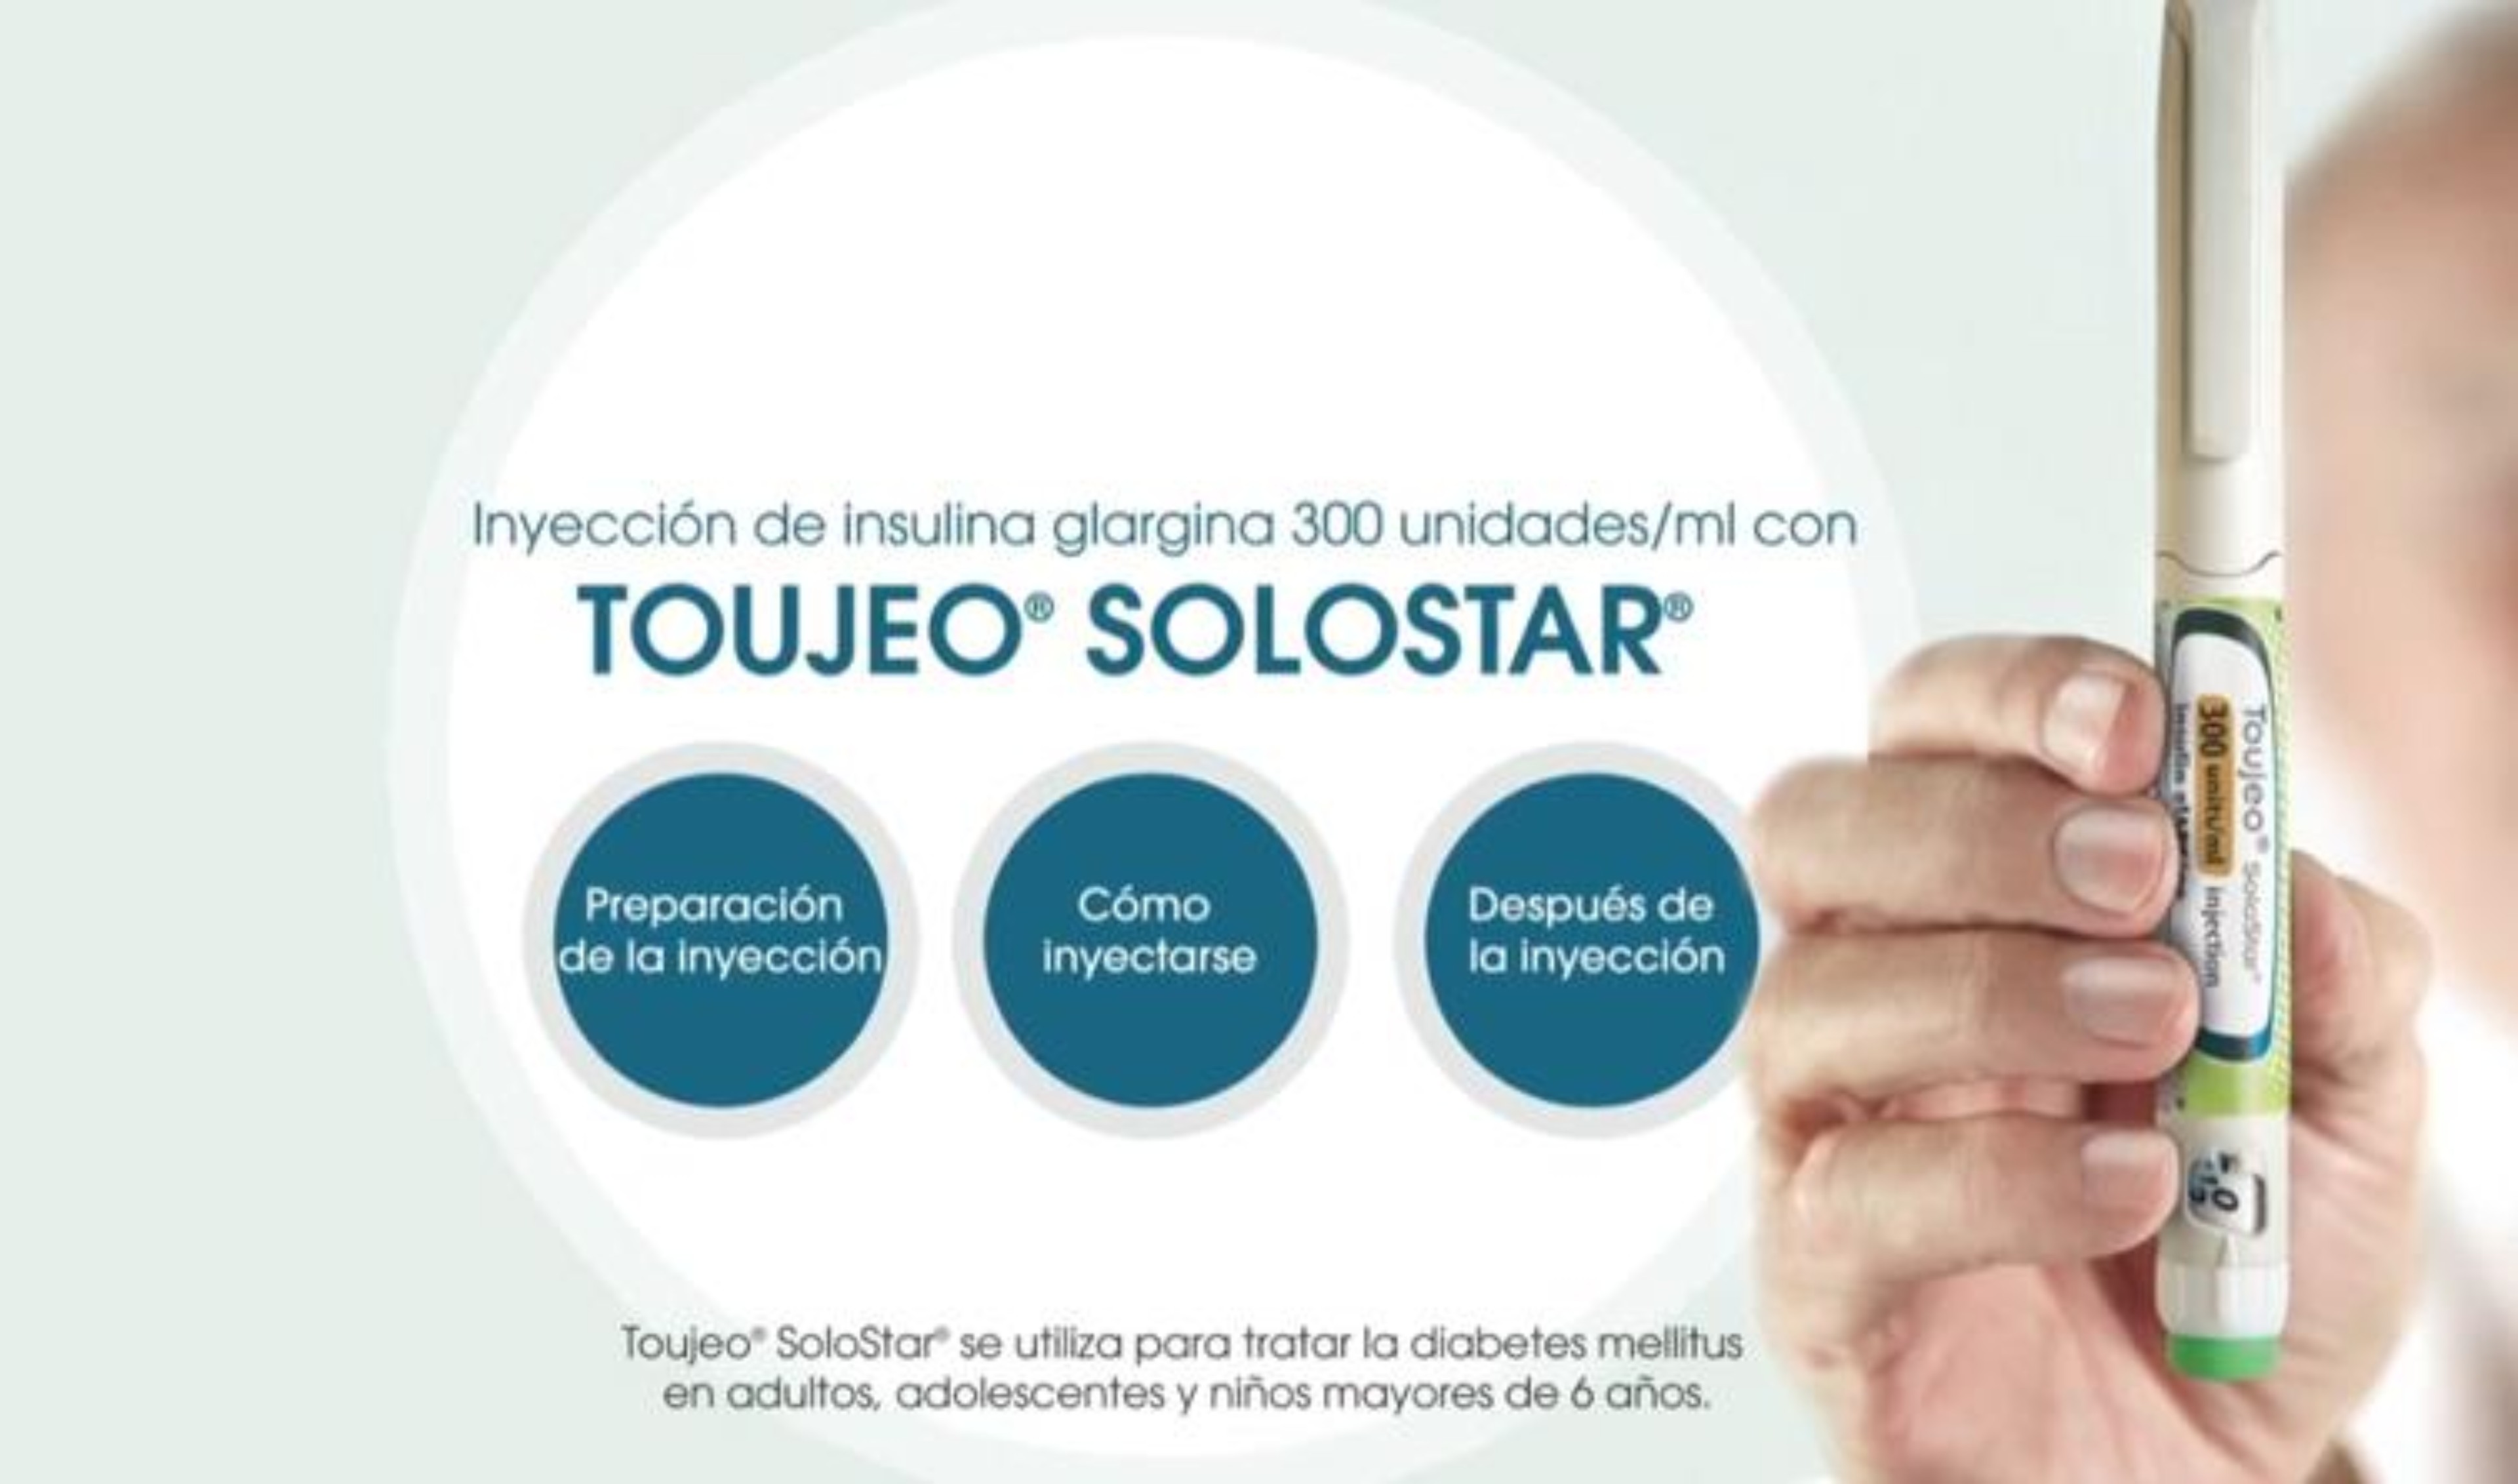 Video Guía de uso Toujeo SoloStar